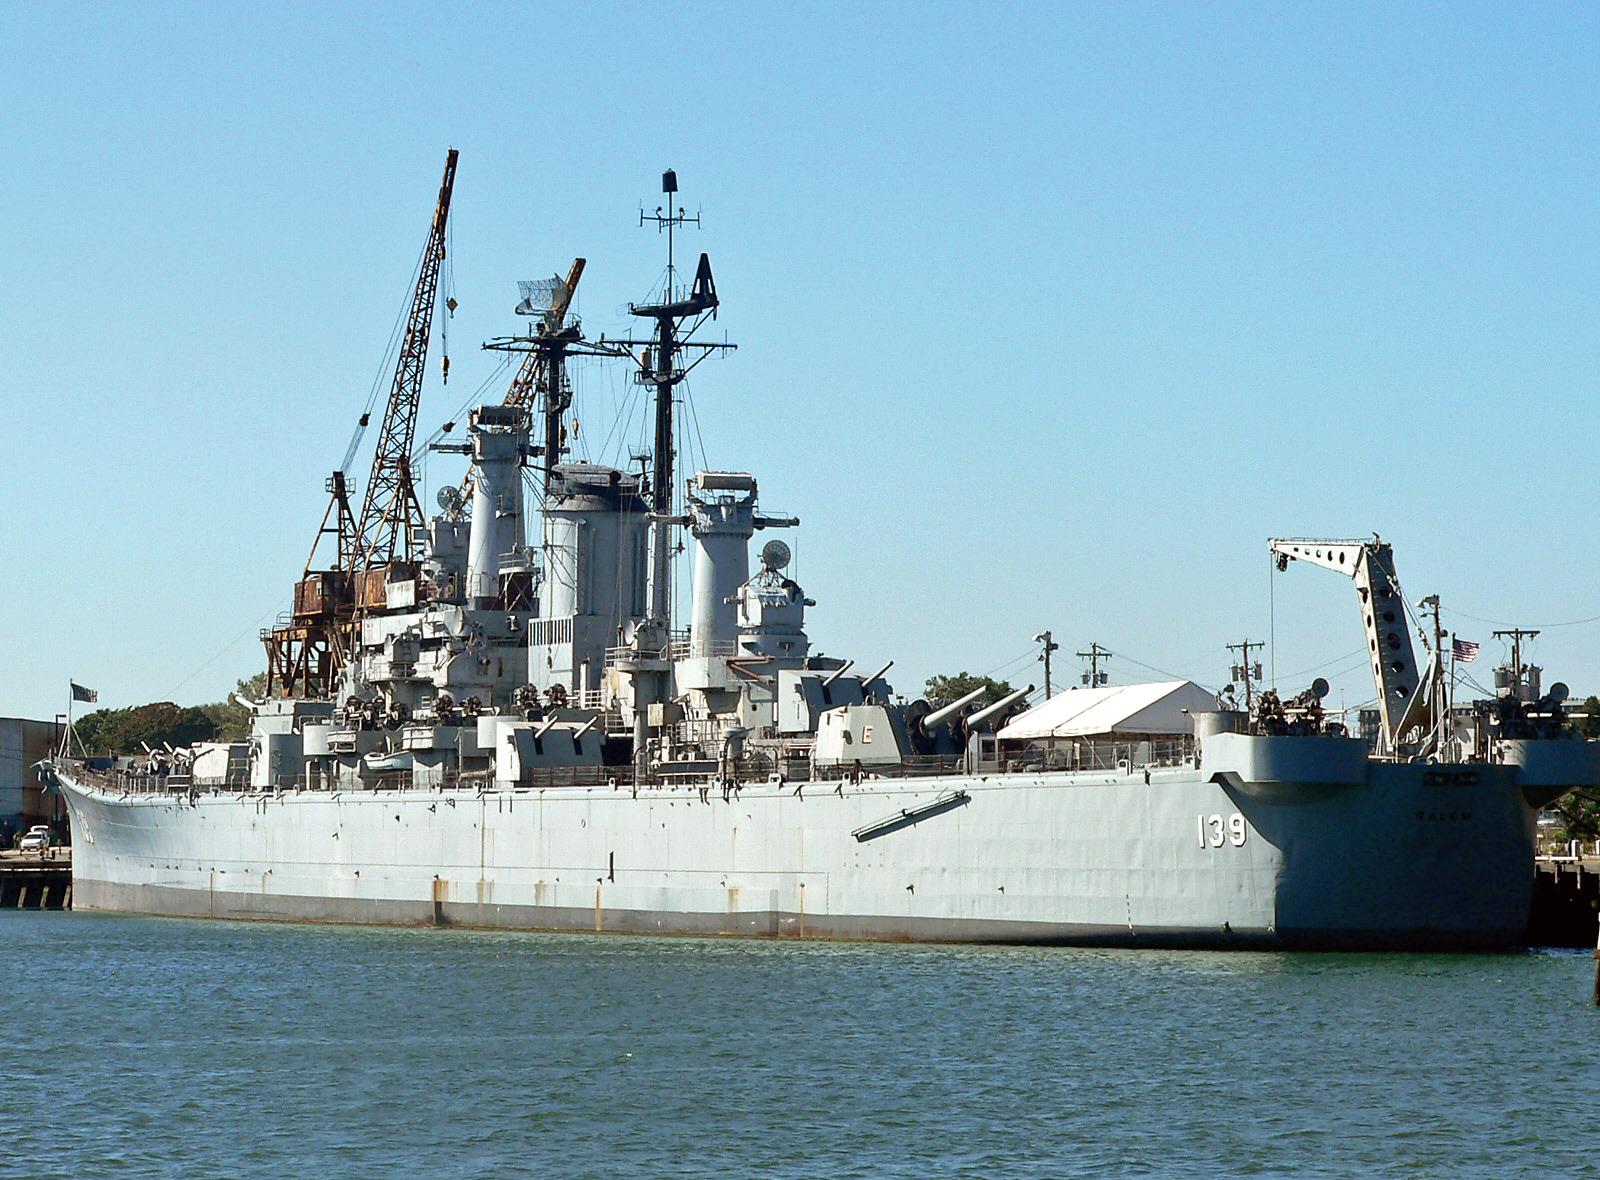 USS Salem CA 139